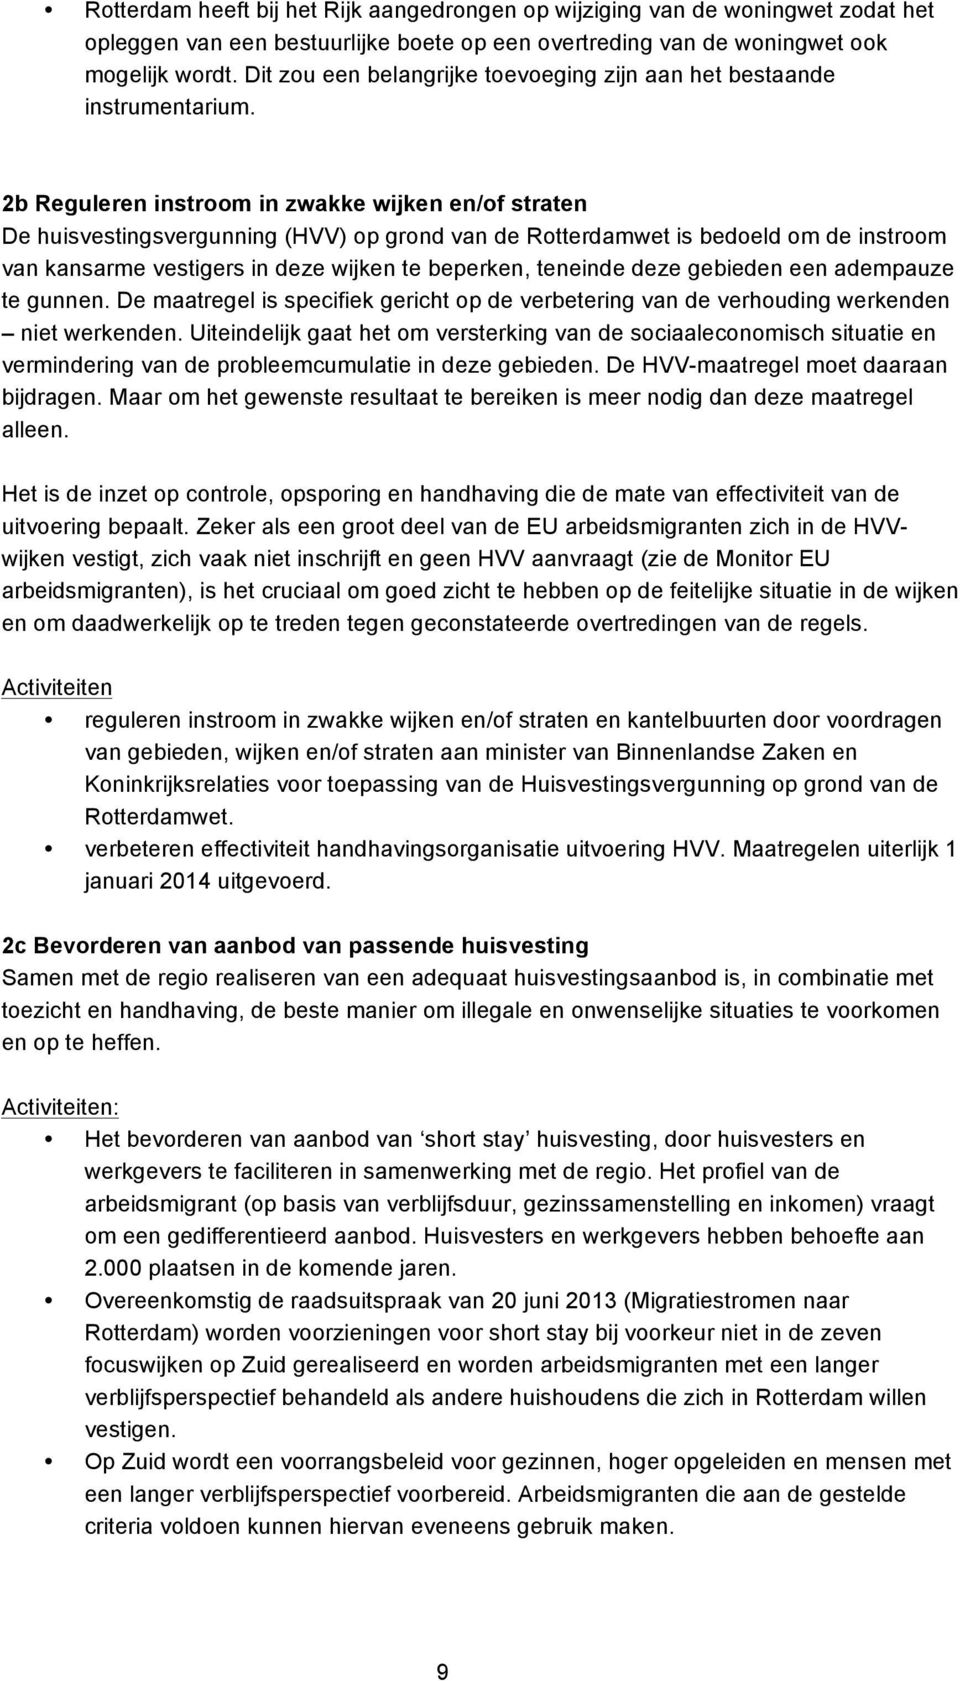 2b Reguleren instroom in zwakke wijken en/of straten De huisvestingsvergunning (HVV) op grond van de Rotterdamwet is bedoeld om de instroom van kansarme vestigers in deze wijken te beperken, teneinde